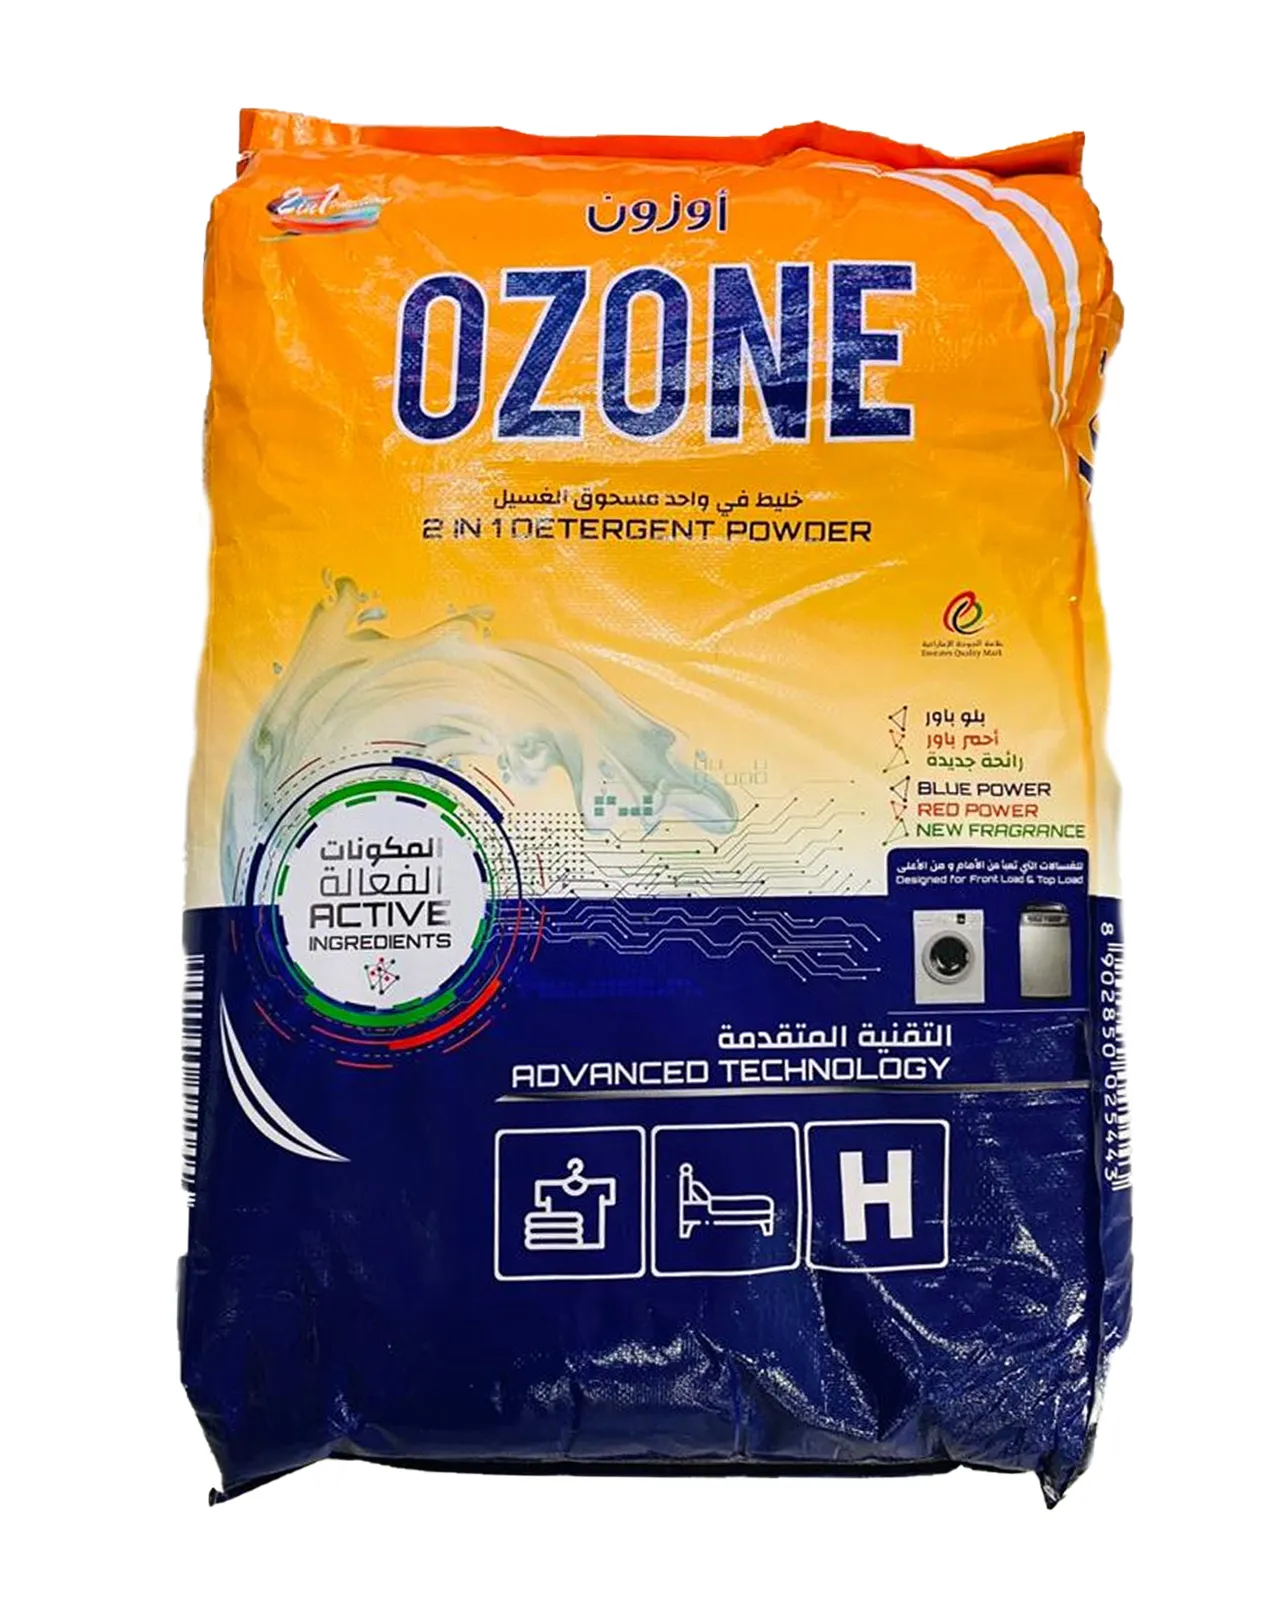 Ozone 2-in-1 Detergent Powder, 19Kg